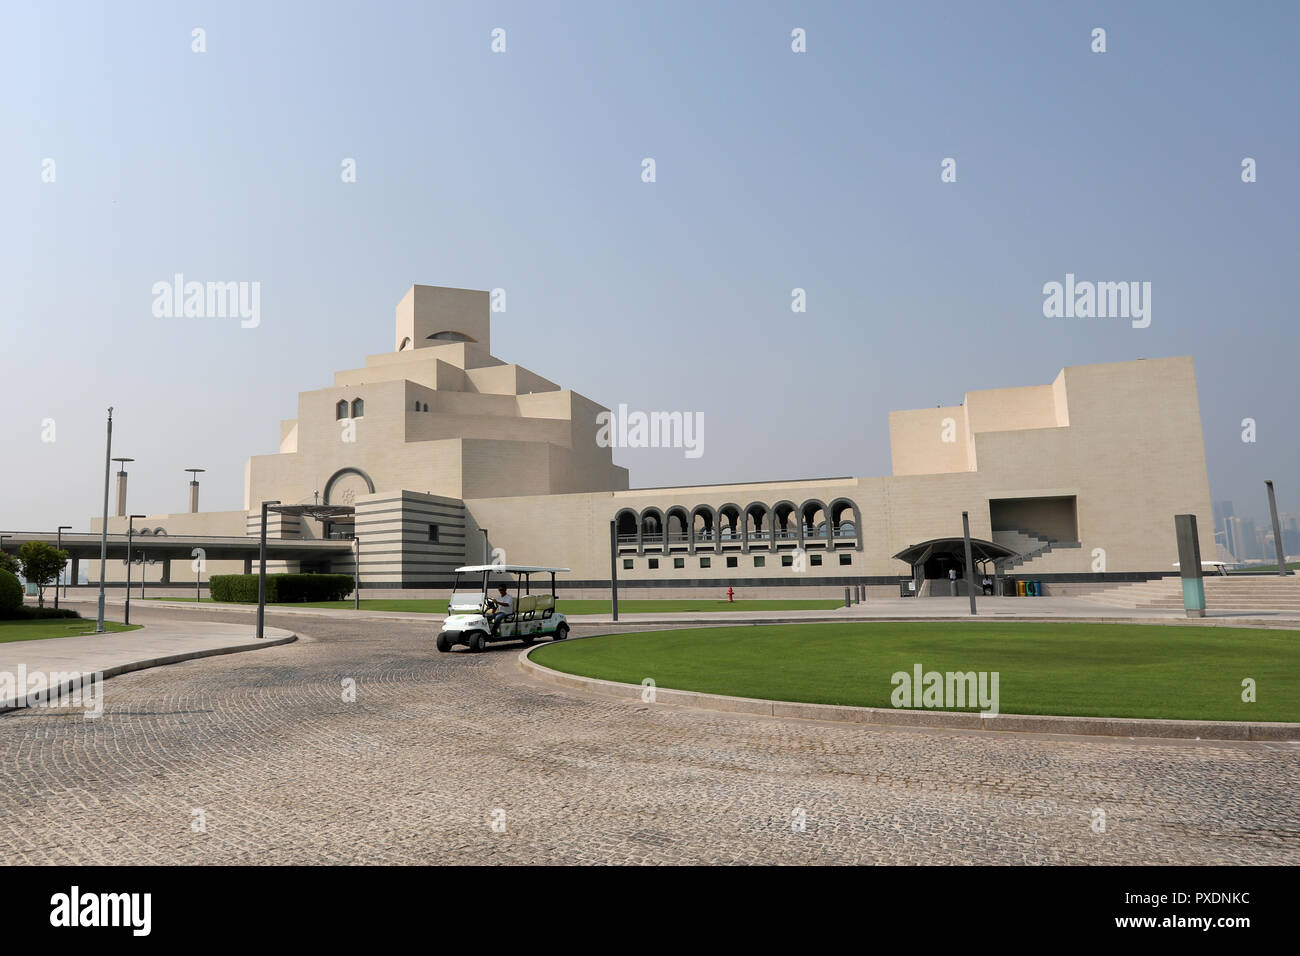 / Doha Qatar - Octubre 10, 2018: La forma distintiva del Museo de Arte Islámico en Doha, Qatar, diseñado por el arquitecto I M Pei. Foto de stock